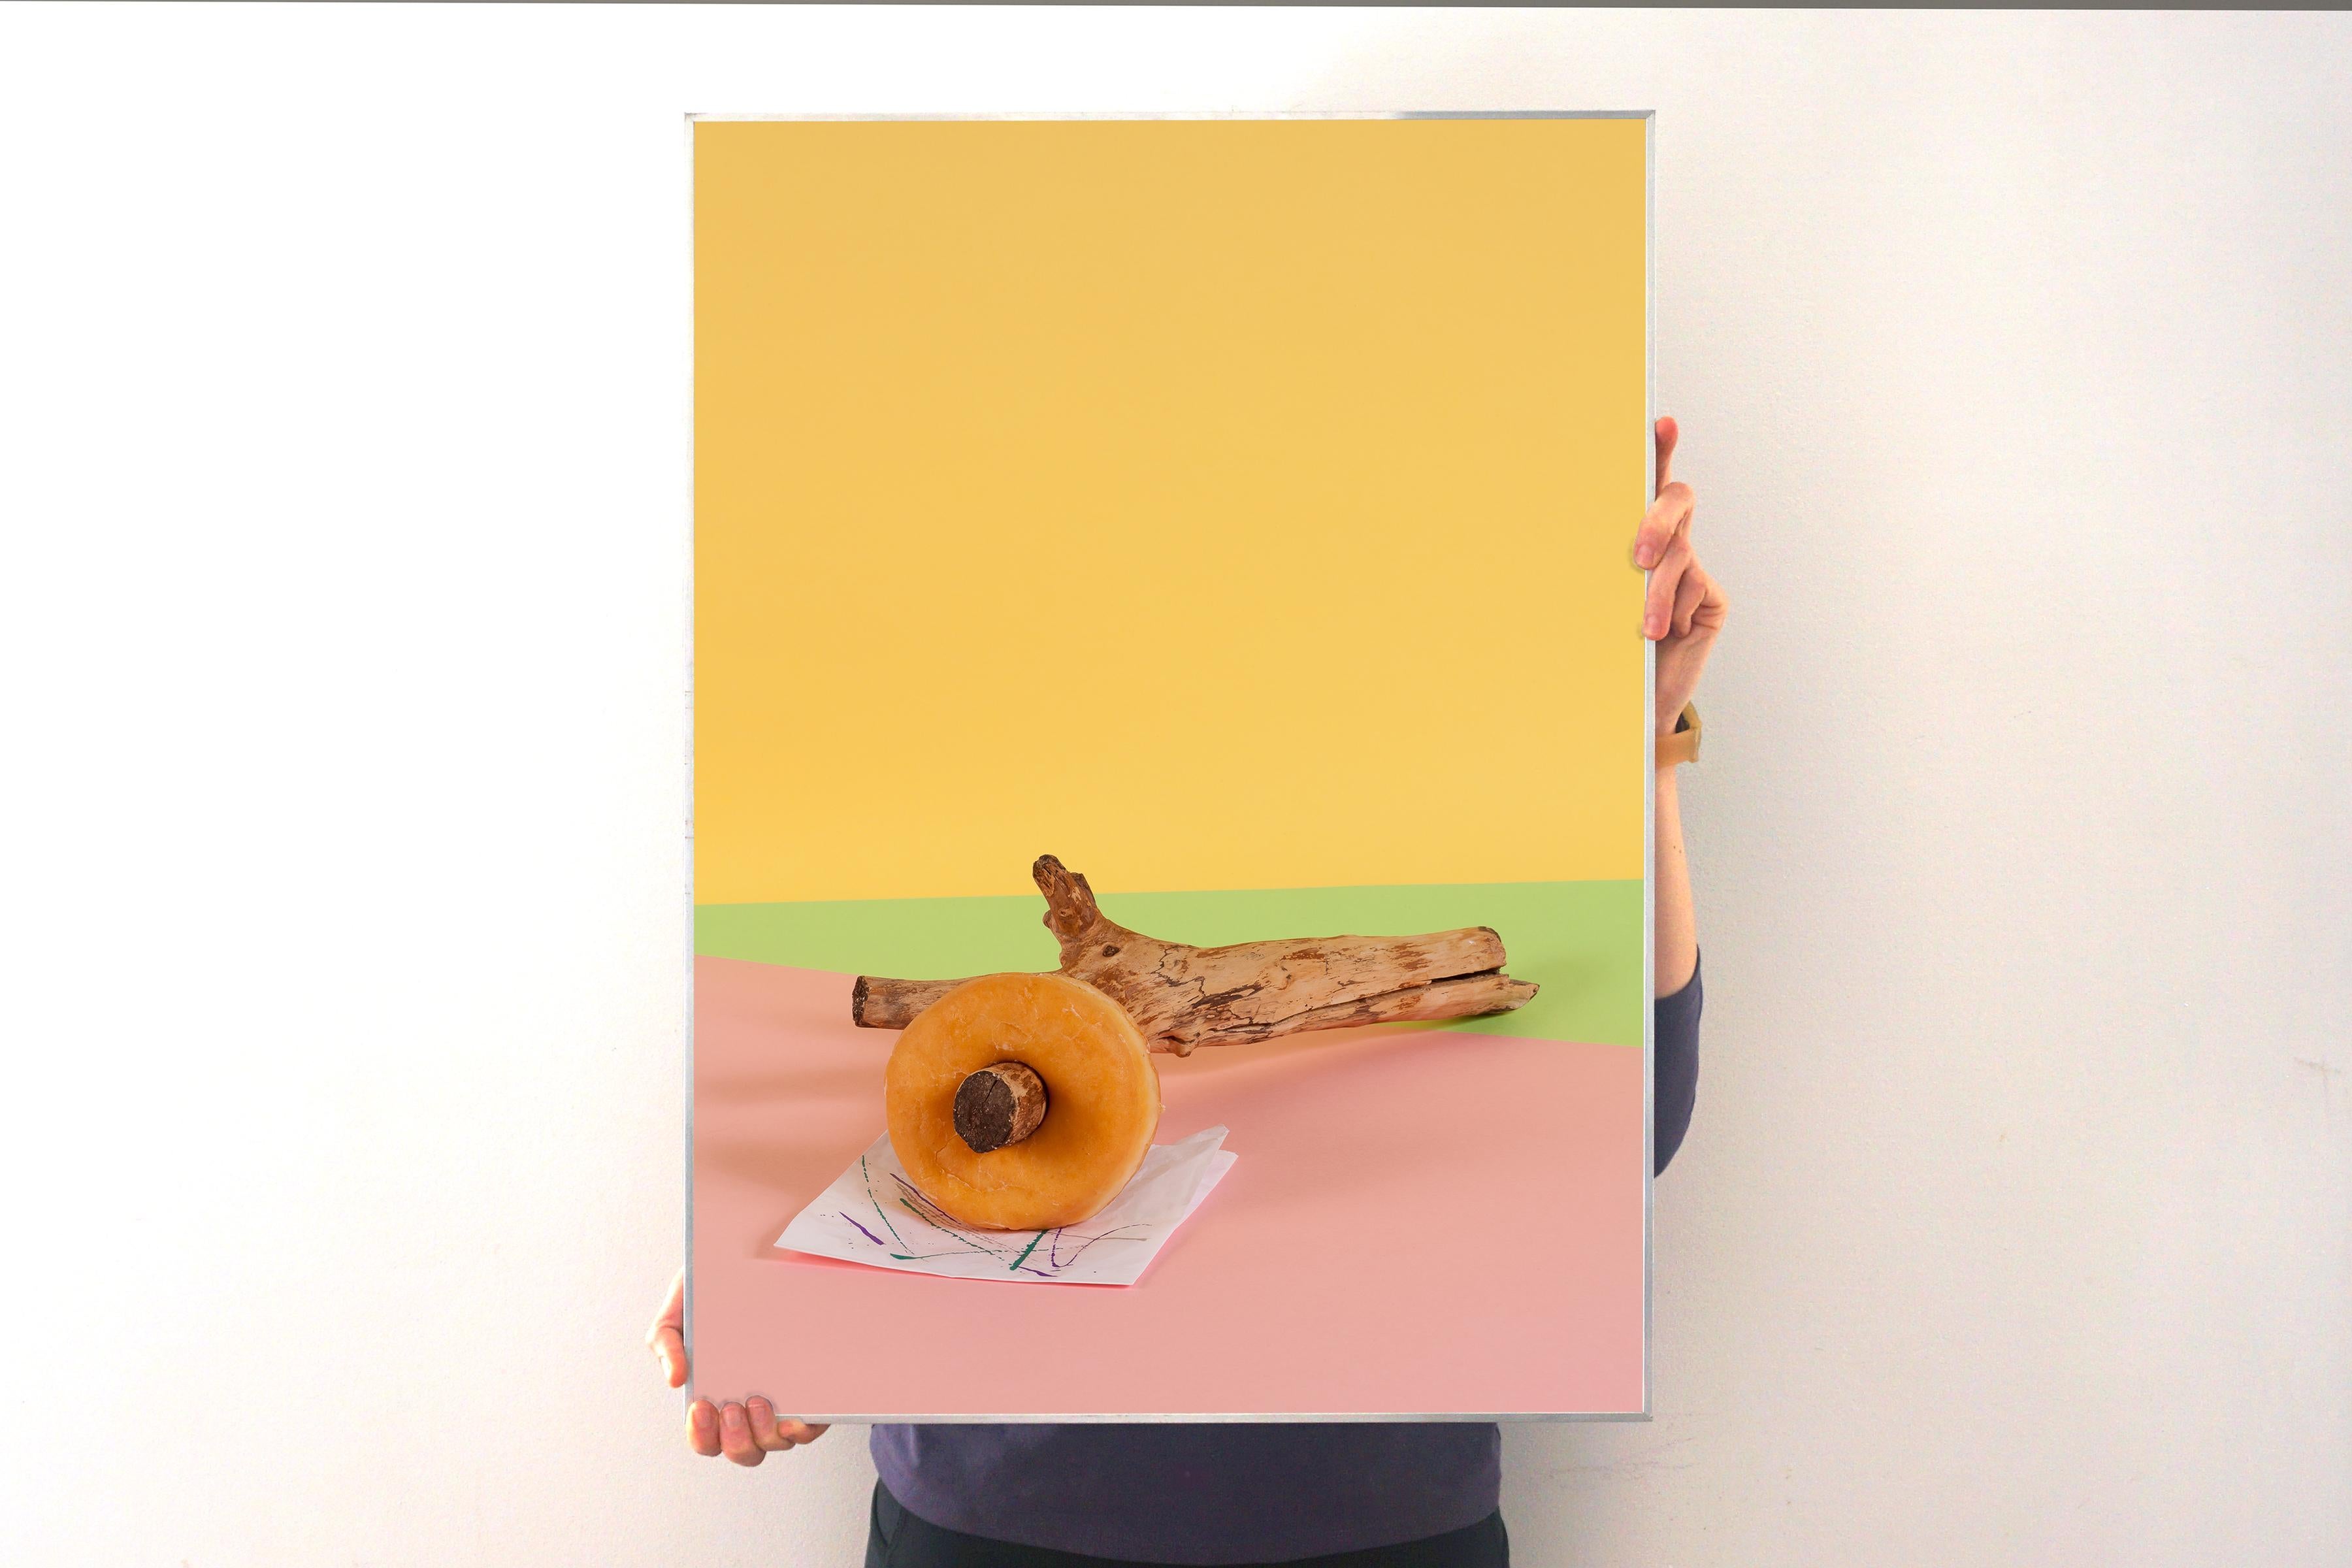 Sexy Nussbaum, Fast Food Zeitgenössisches Stillleben auf gelbem Hintergrund, Gicle – Print von Ryan Rivadeneyra